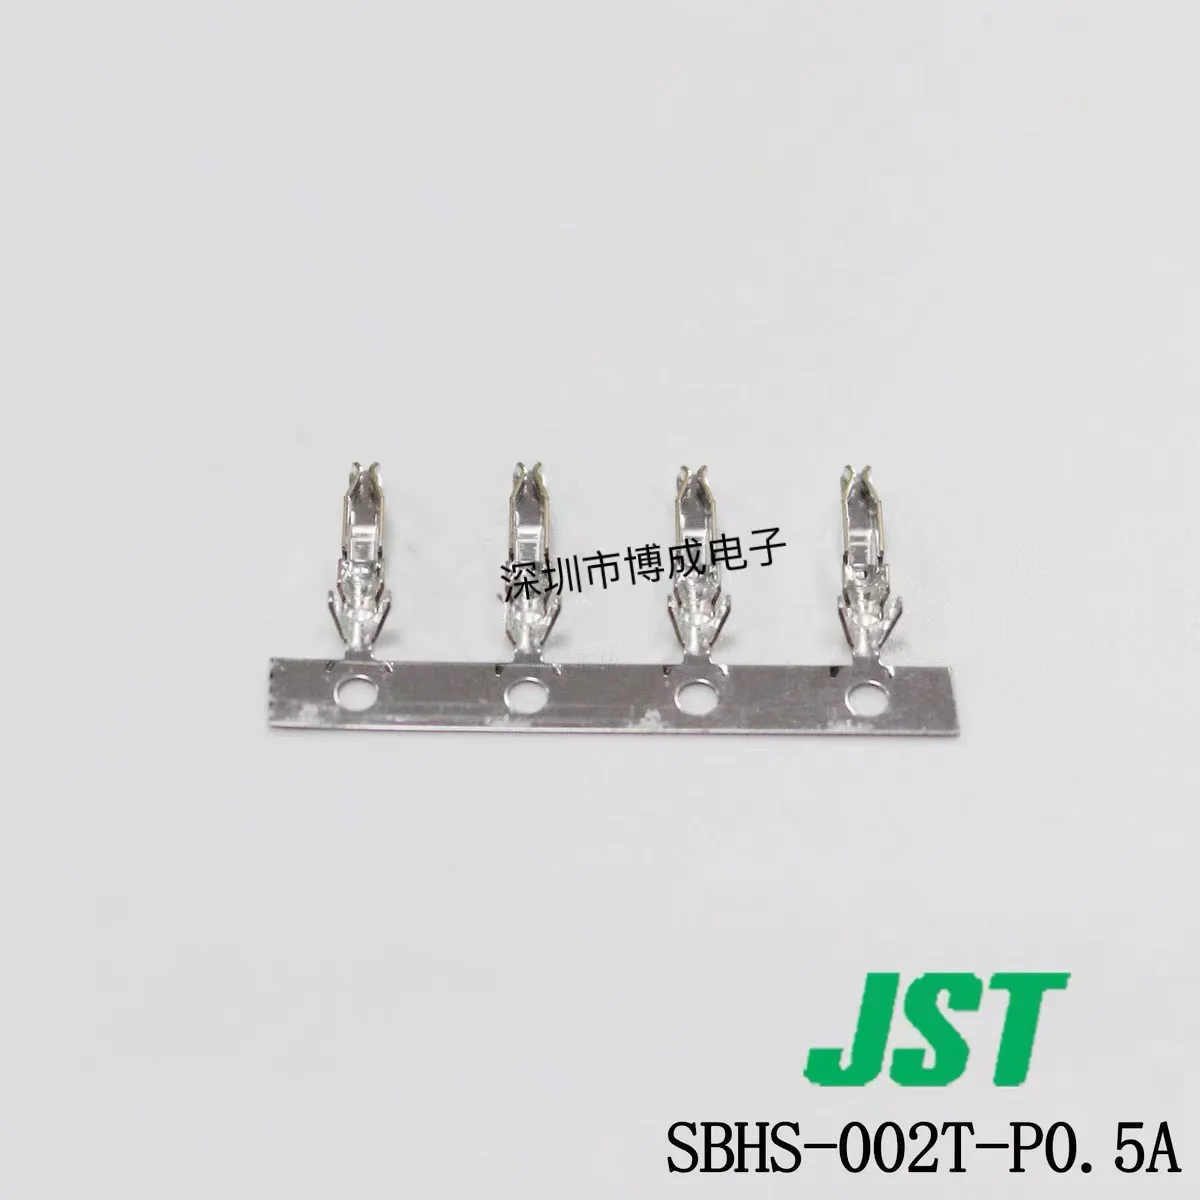 10 пьезорезисторов/100 пьезорезисторов JST de SBHS-002T-P0.5A (LF) (SN) SBH-001T-P0.5 SAUH-001G-M0.2 . ' - ' . 0